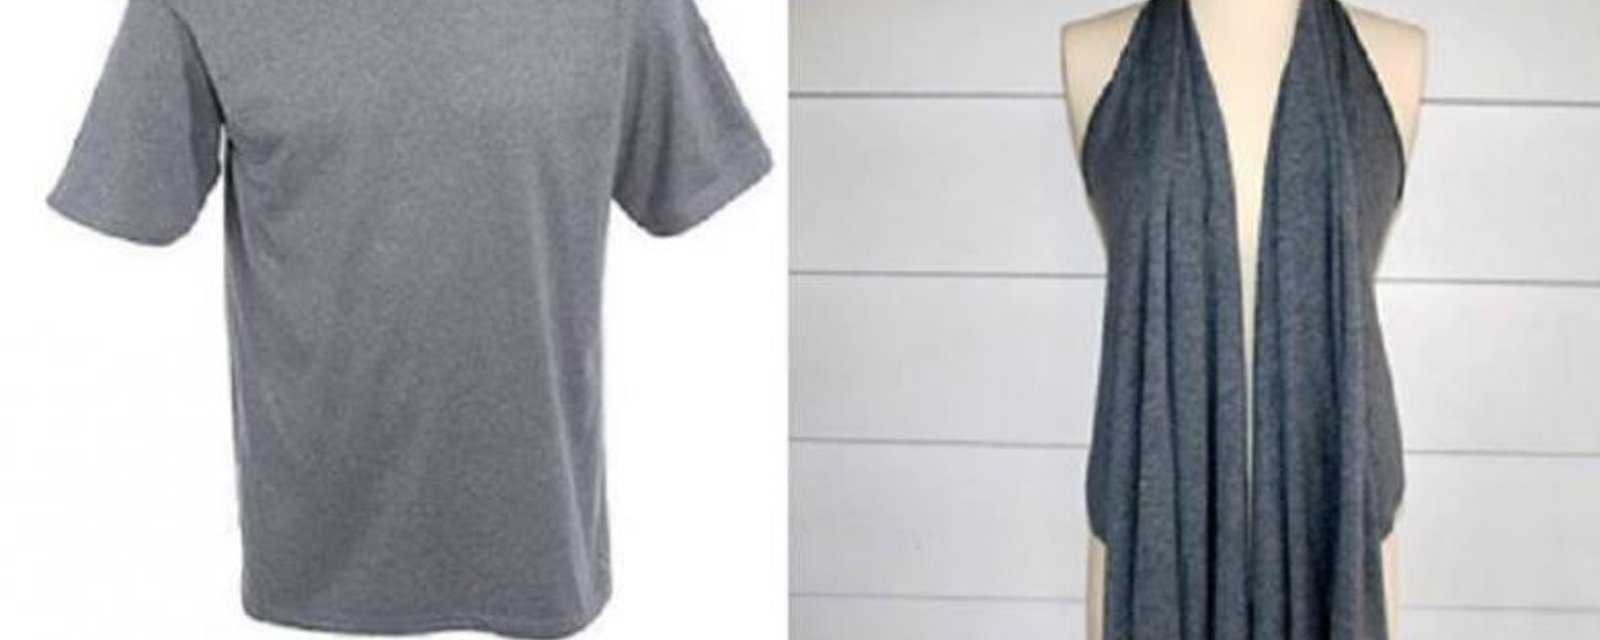 Transformez un t-shirt EXTRA large en pièce de vêtement EXTRA fashion!